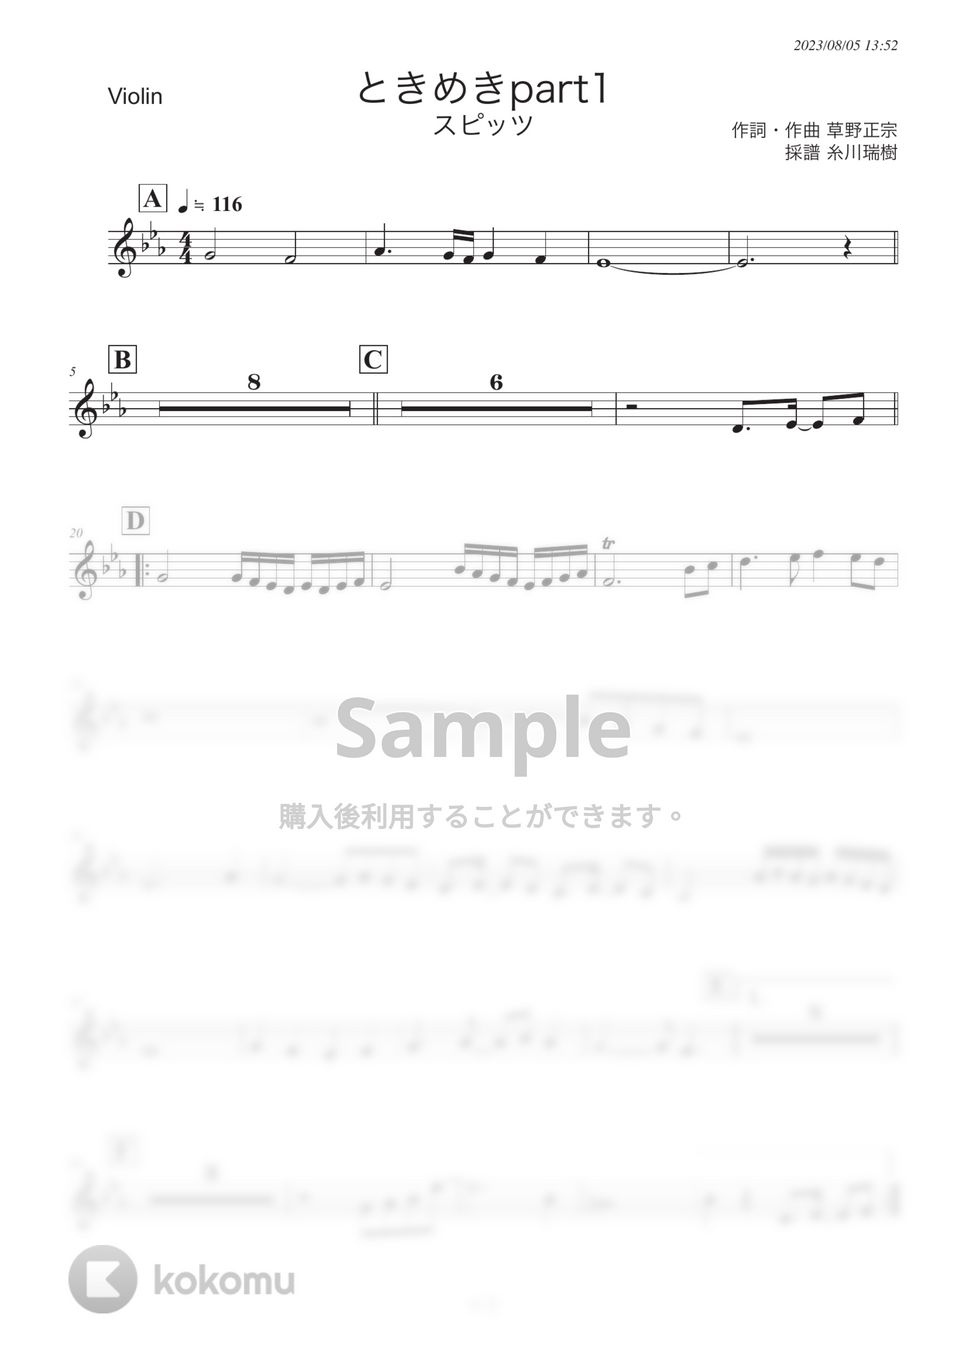 スピッツ - ときめきpart1 (ヴァイオリンパート) by 糸川瑞樹